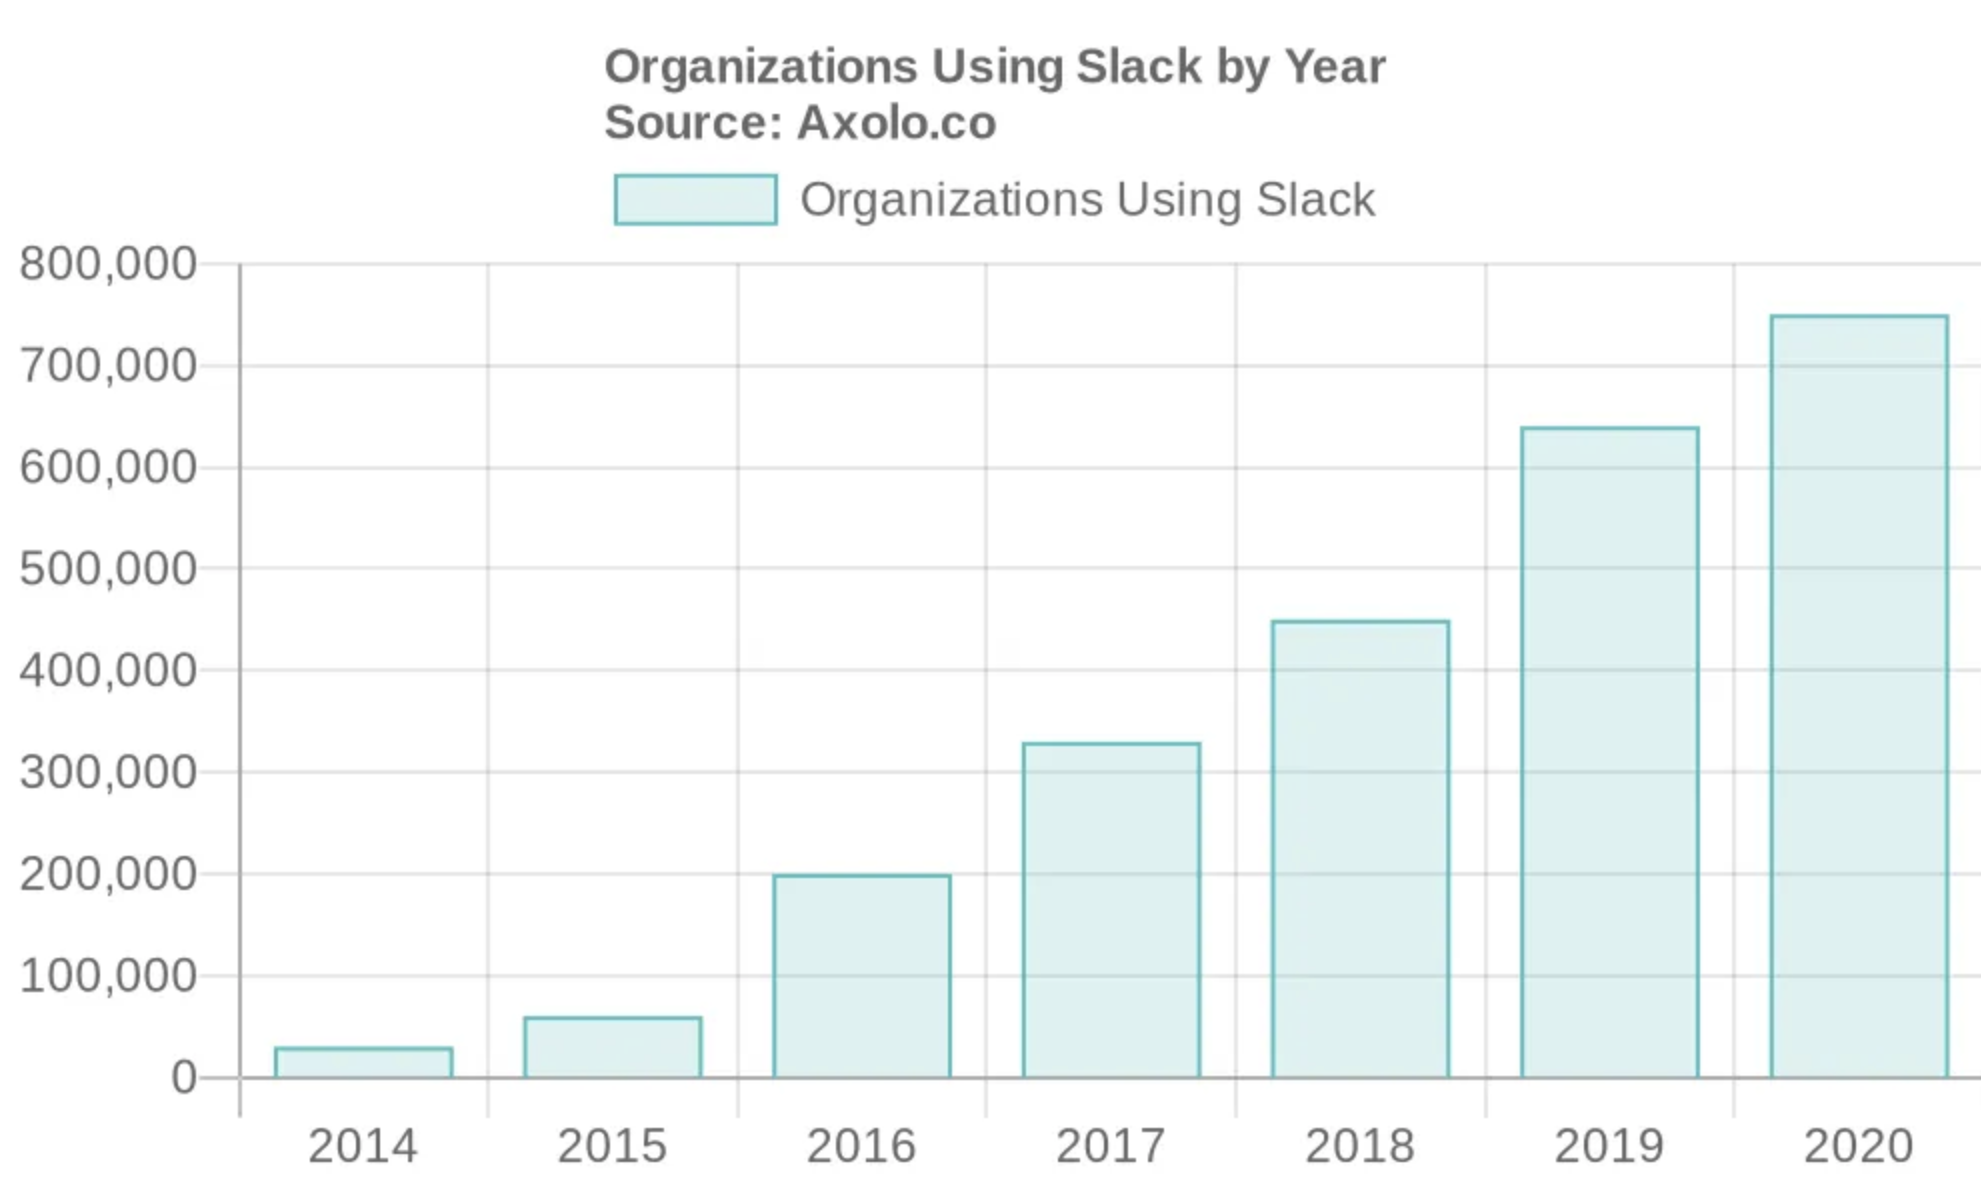 Organizations using slack by year